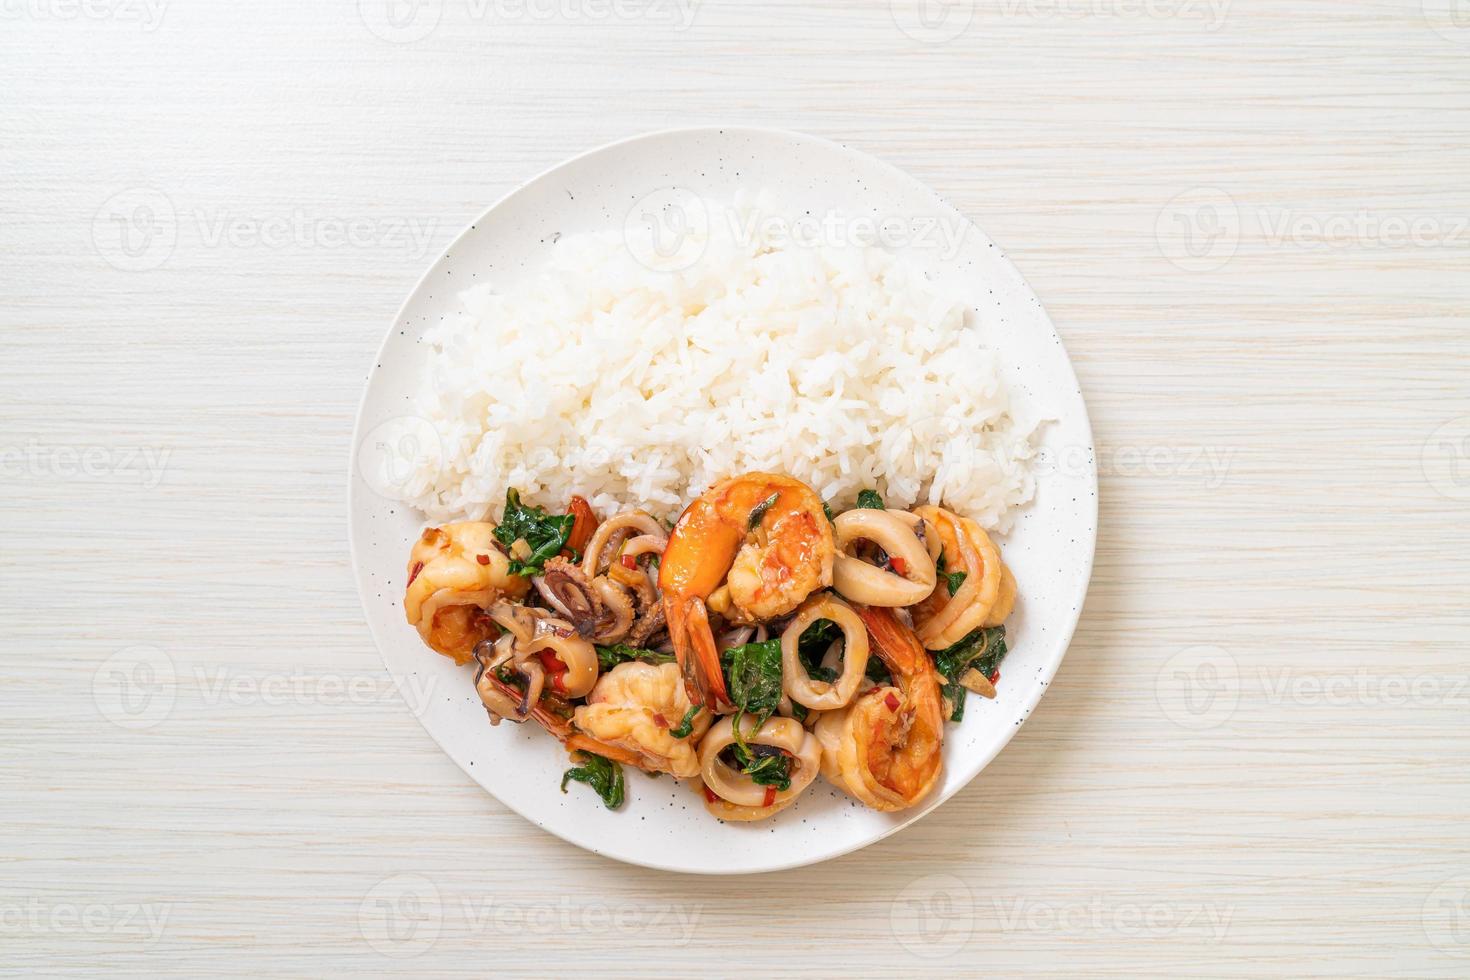 riso e frutti di mare saltati in padella di gamberi e calamari con basilico thai - stile asiatico foto